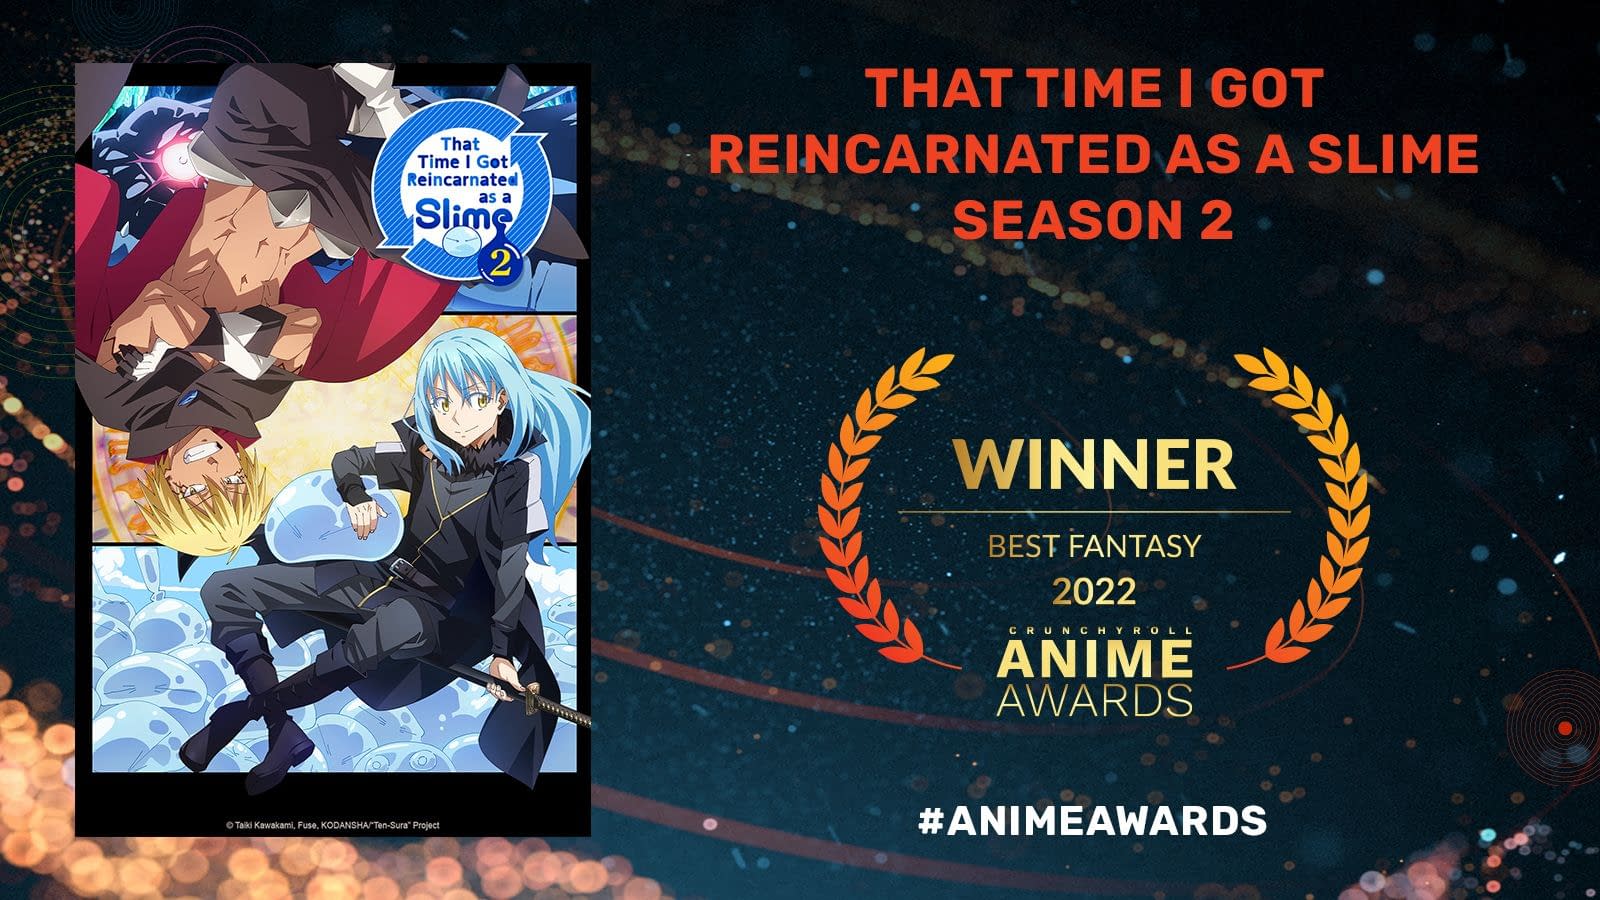 9Anime Anime Awards 2022 